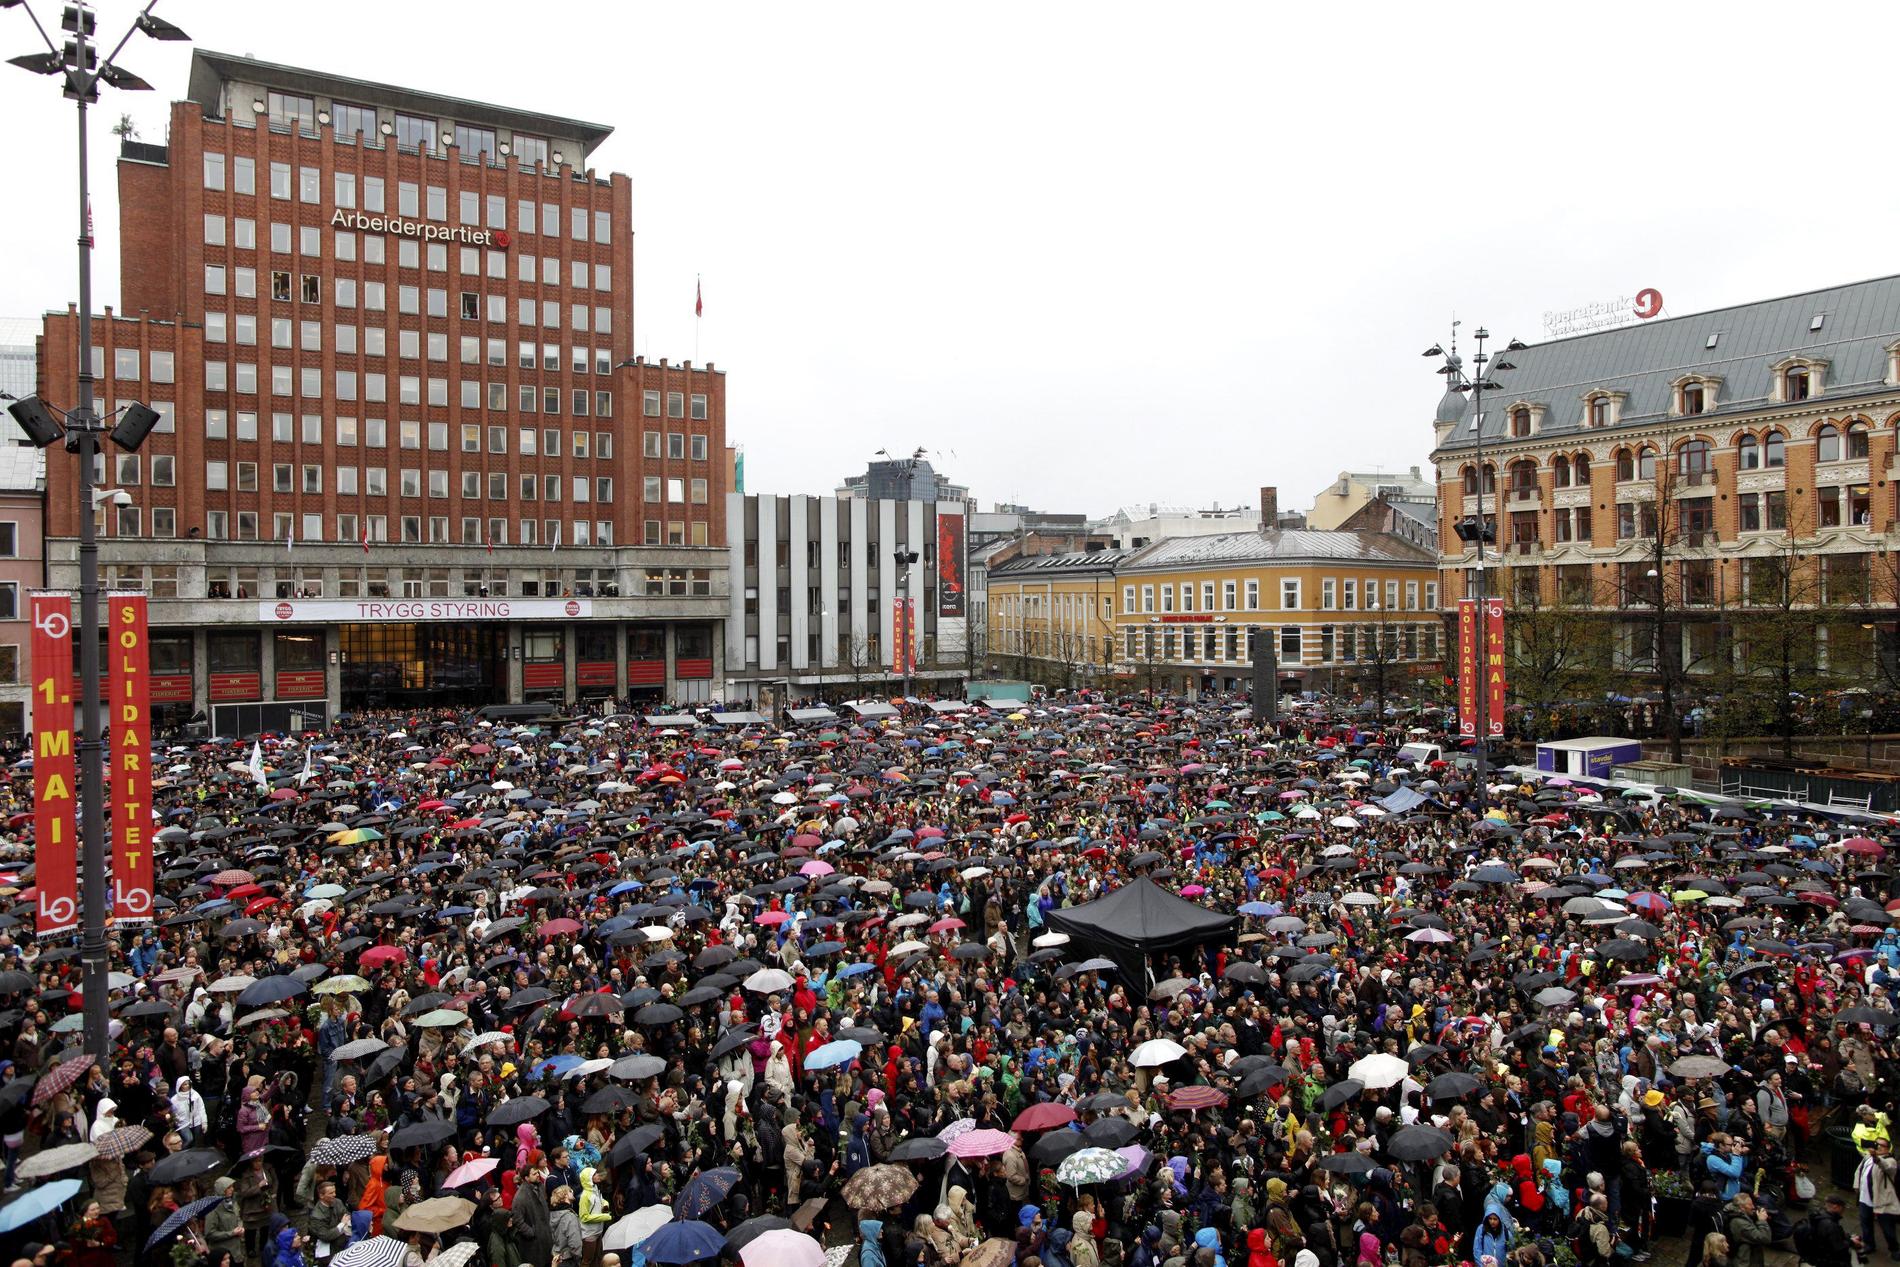 26 april samlades tusentals norrmän utanför rättssalen för att sjunga sången ”Barn av regnbuen”, en sång som Breivik uttryckligen sagt att han hatar. Målet var att sången skulle höras in i rätten.